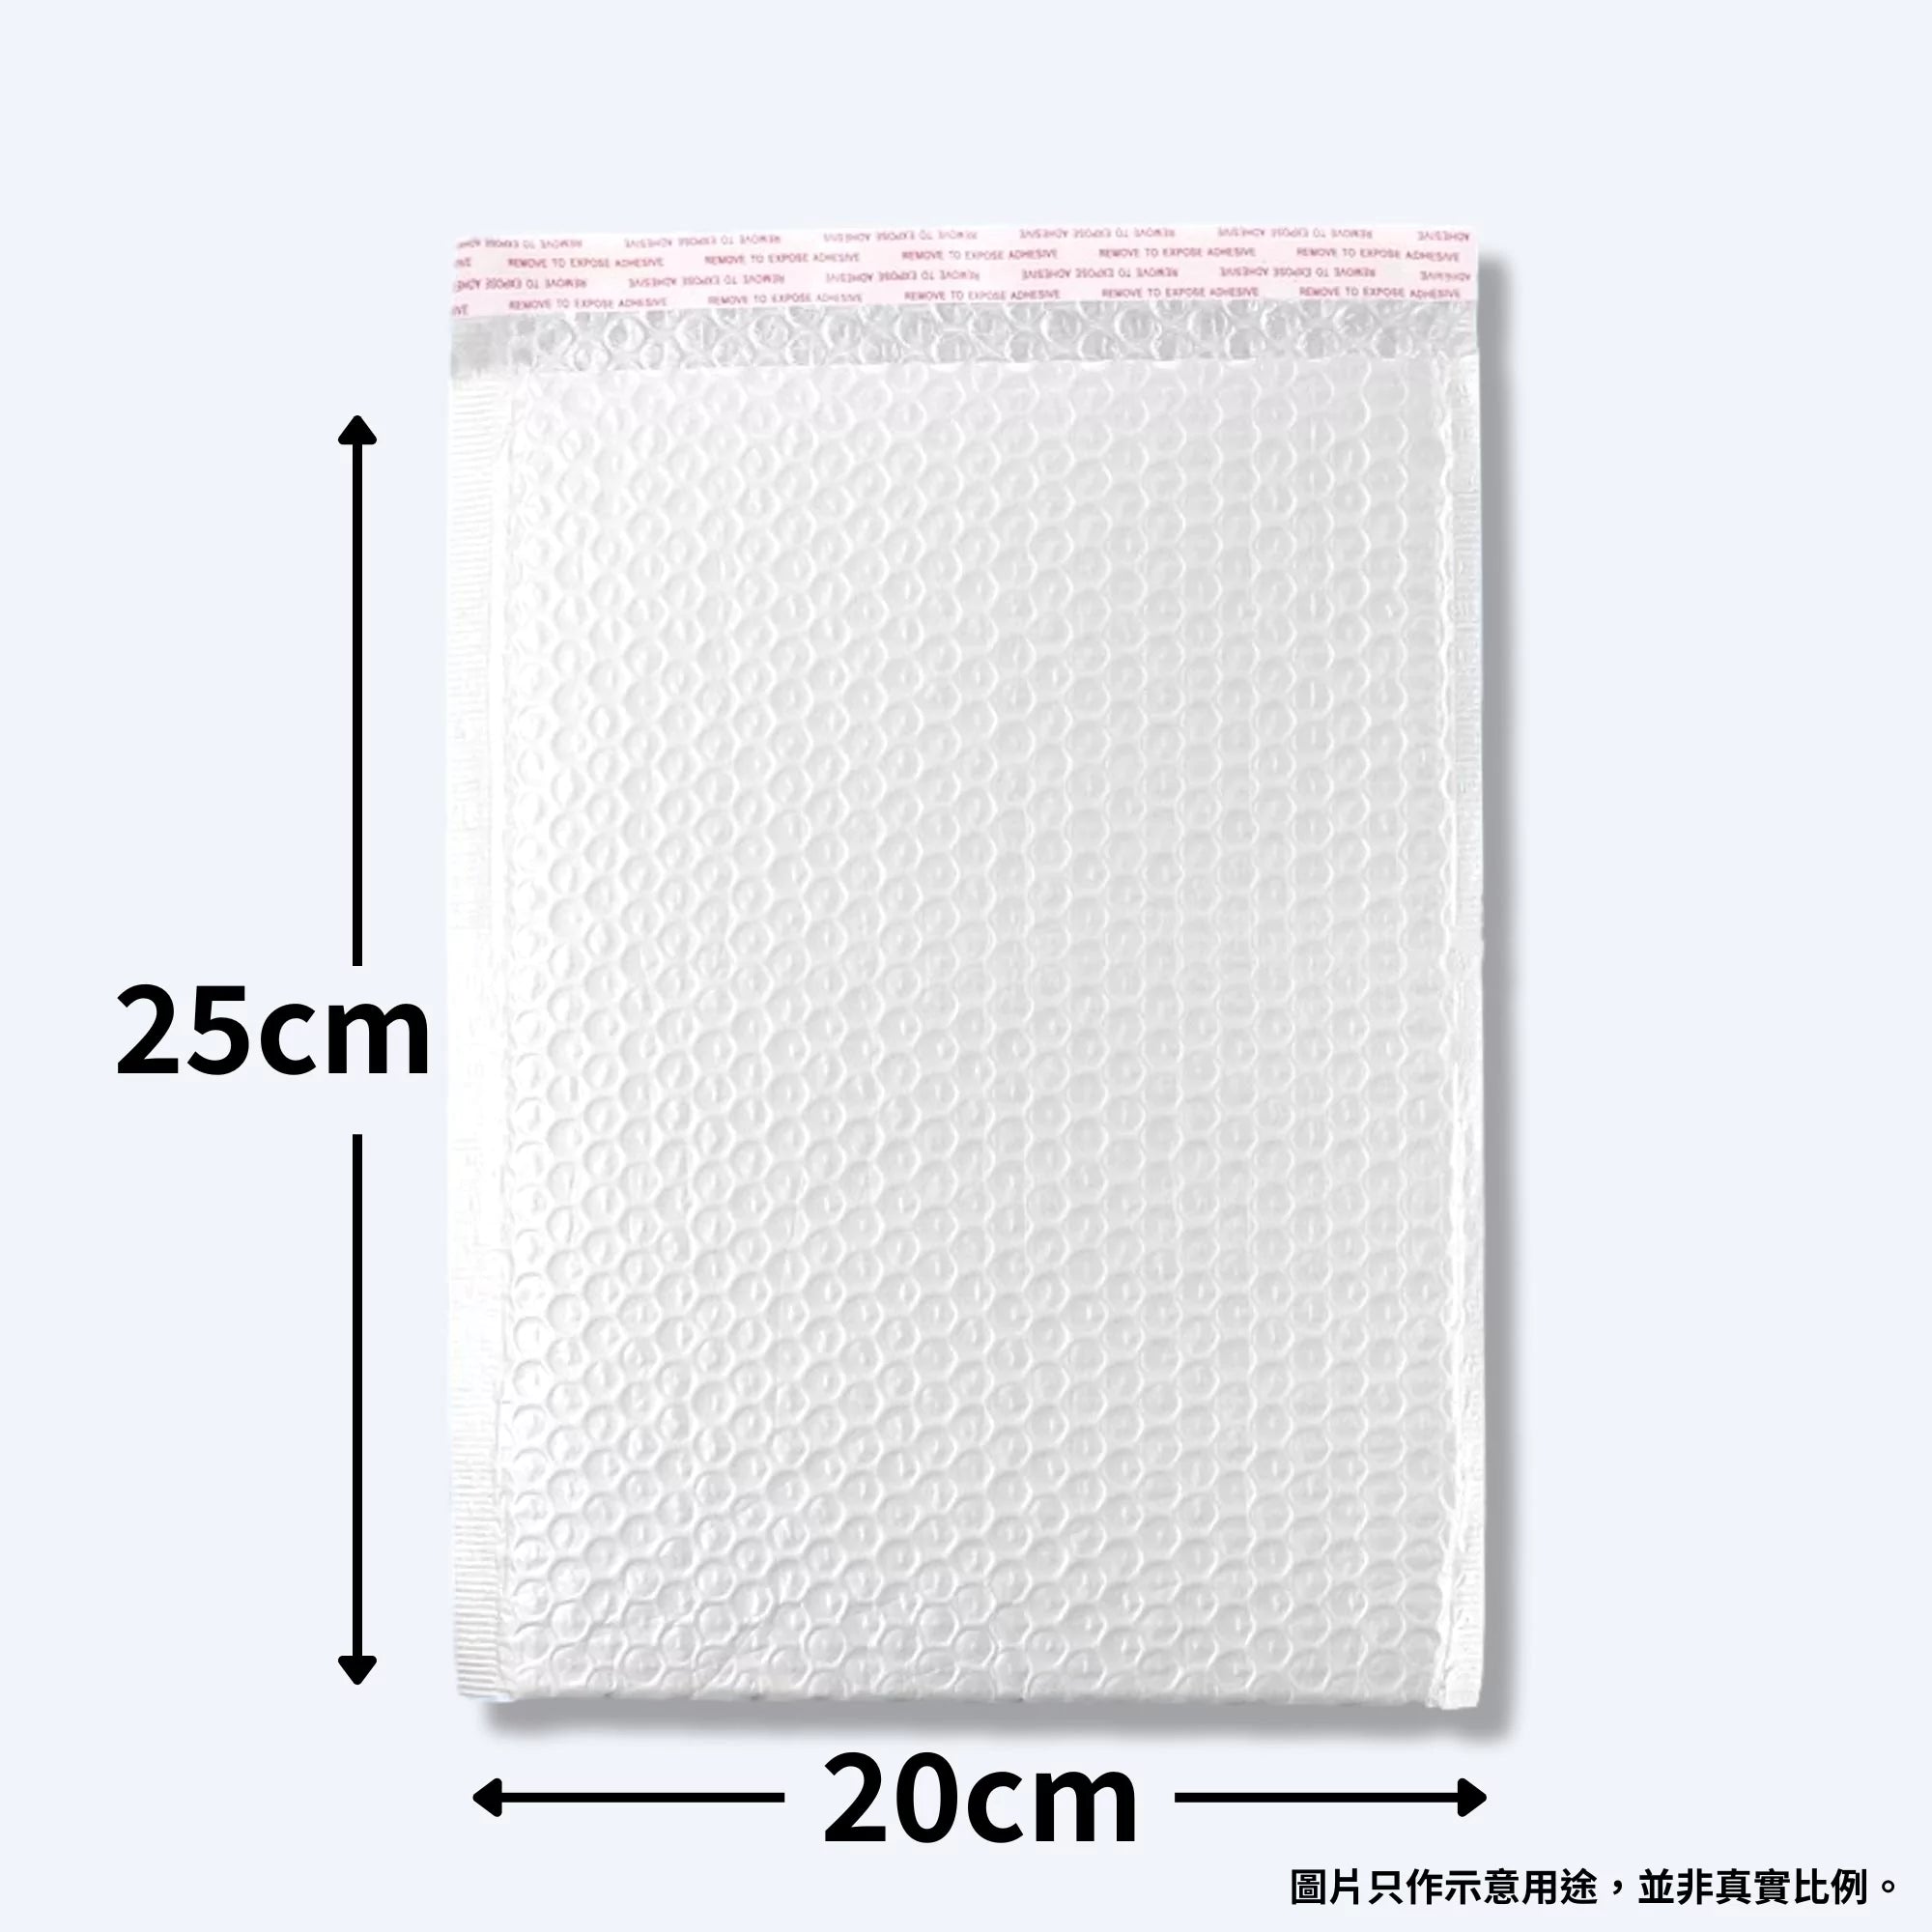 加大25cm x 20cm白色bubble氣珠膠袋，提供優質氣珠膠防撞保護，適合各種郵寄包裝需求。